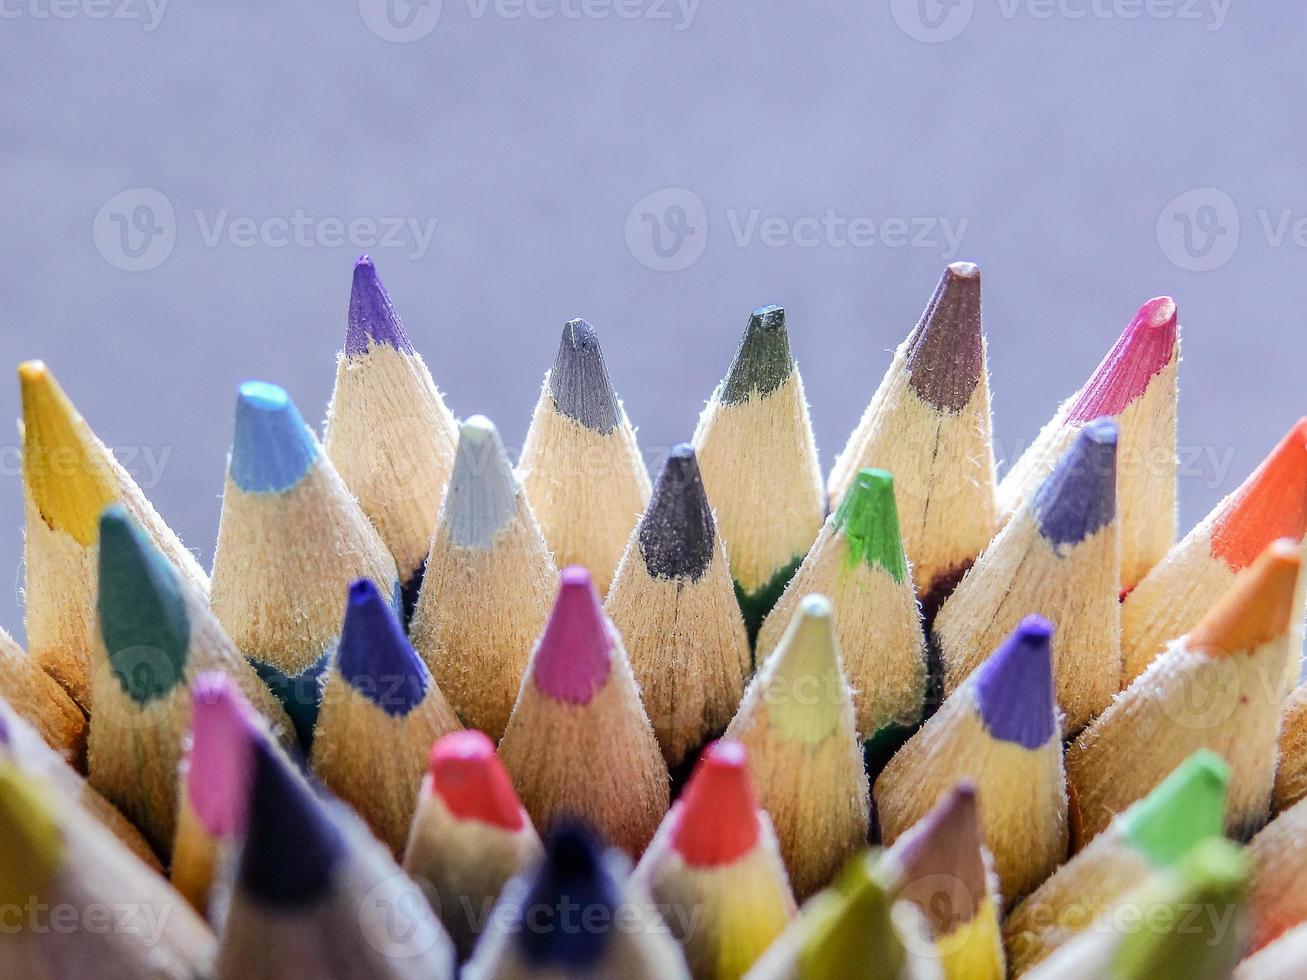 groupe de crayons de couleur photo